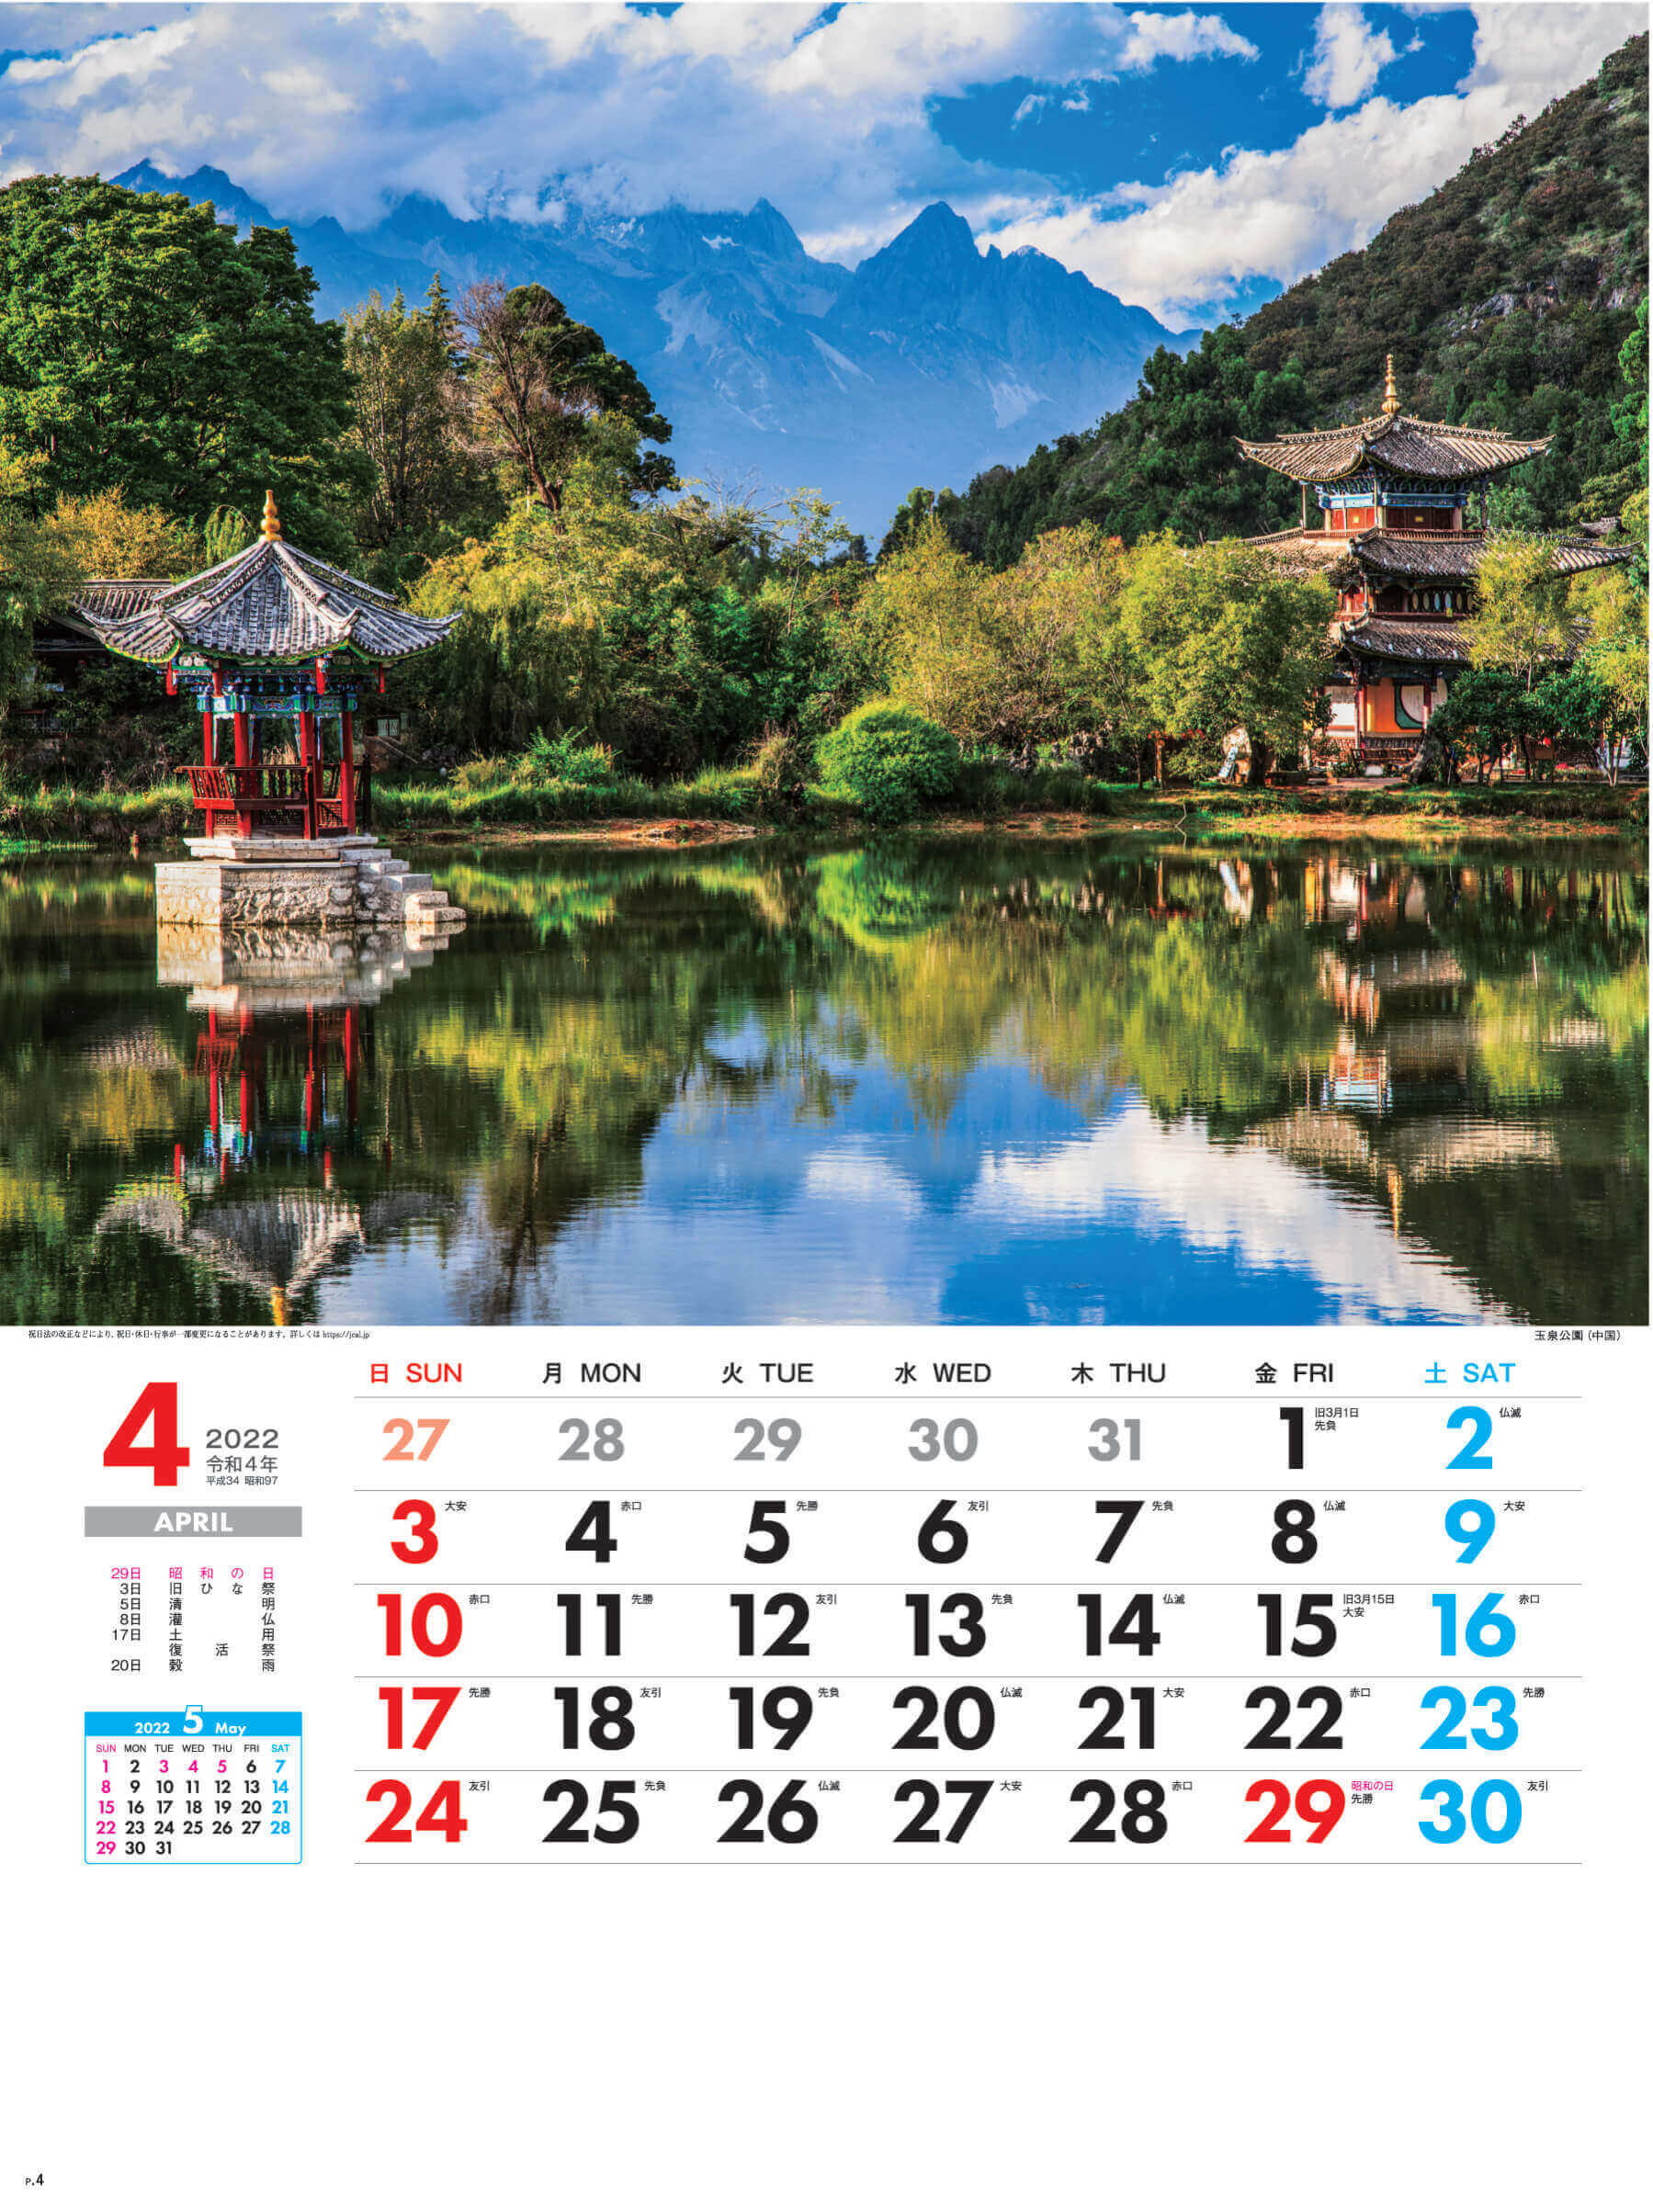 4月 玉泉公園 中国 外国風景 2022年カレンダーの画像